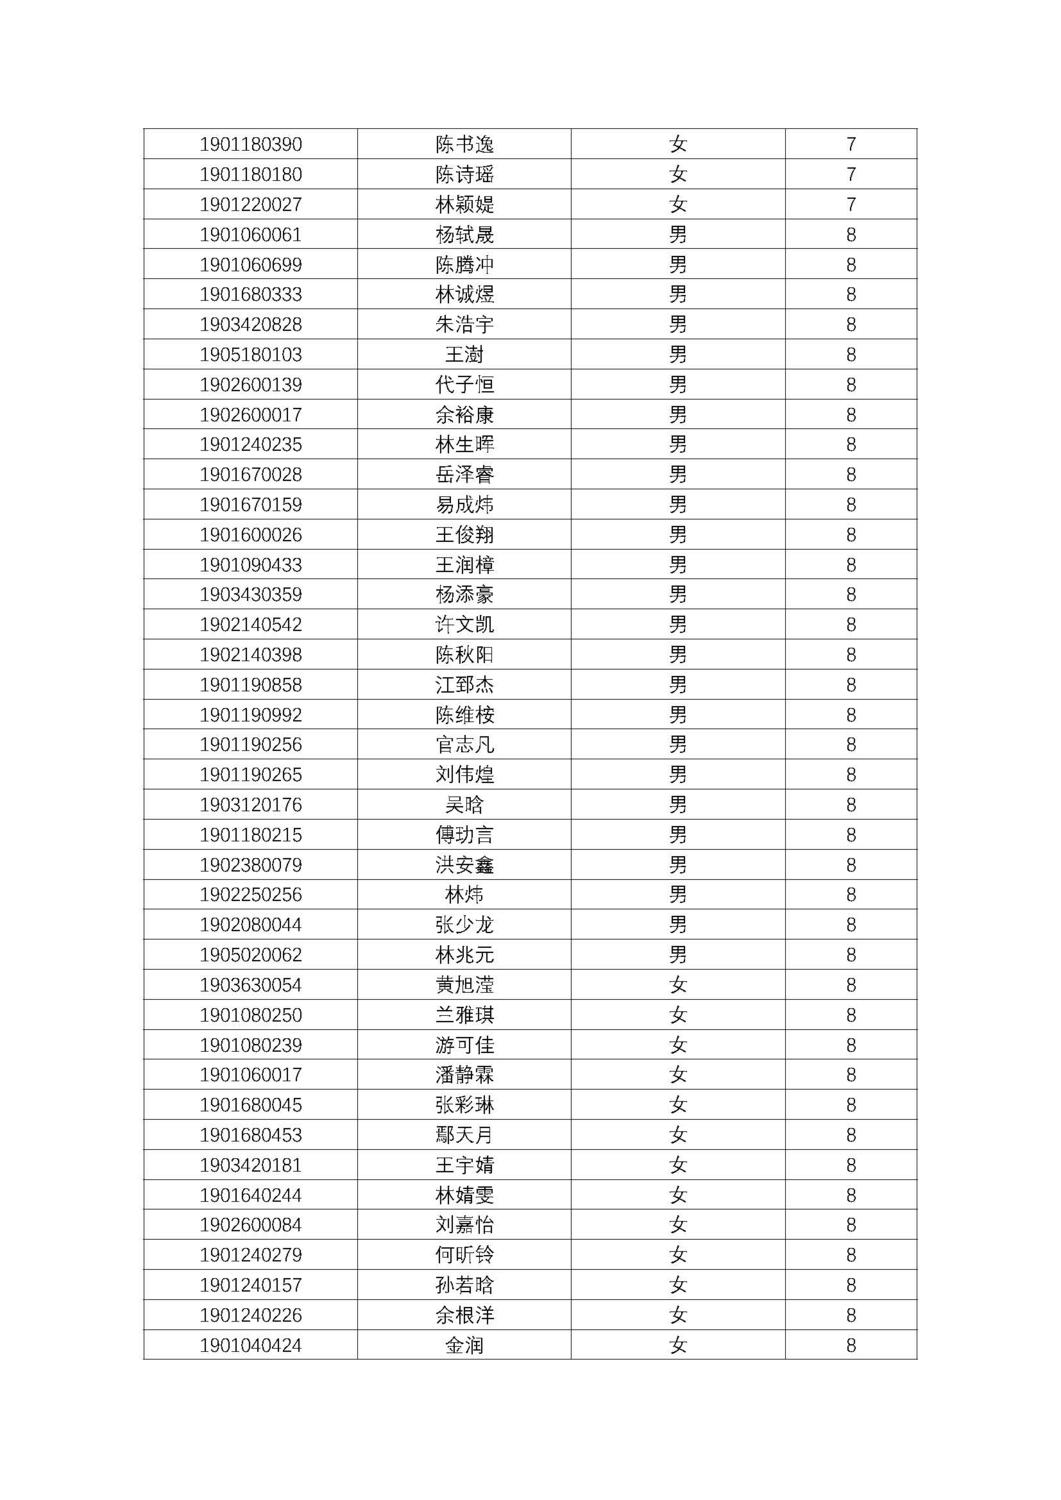 福州第十八中学2019级高一新生分班名单及报到须知_页面_10.jpg